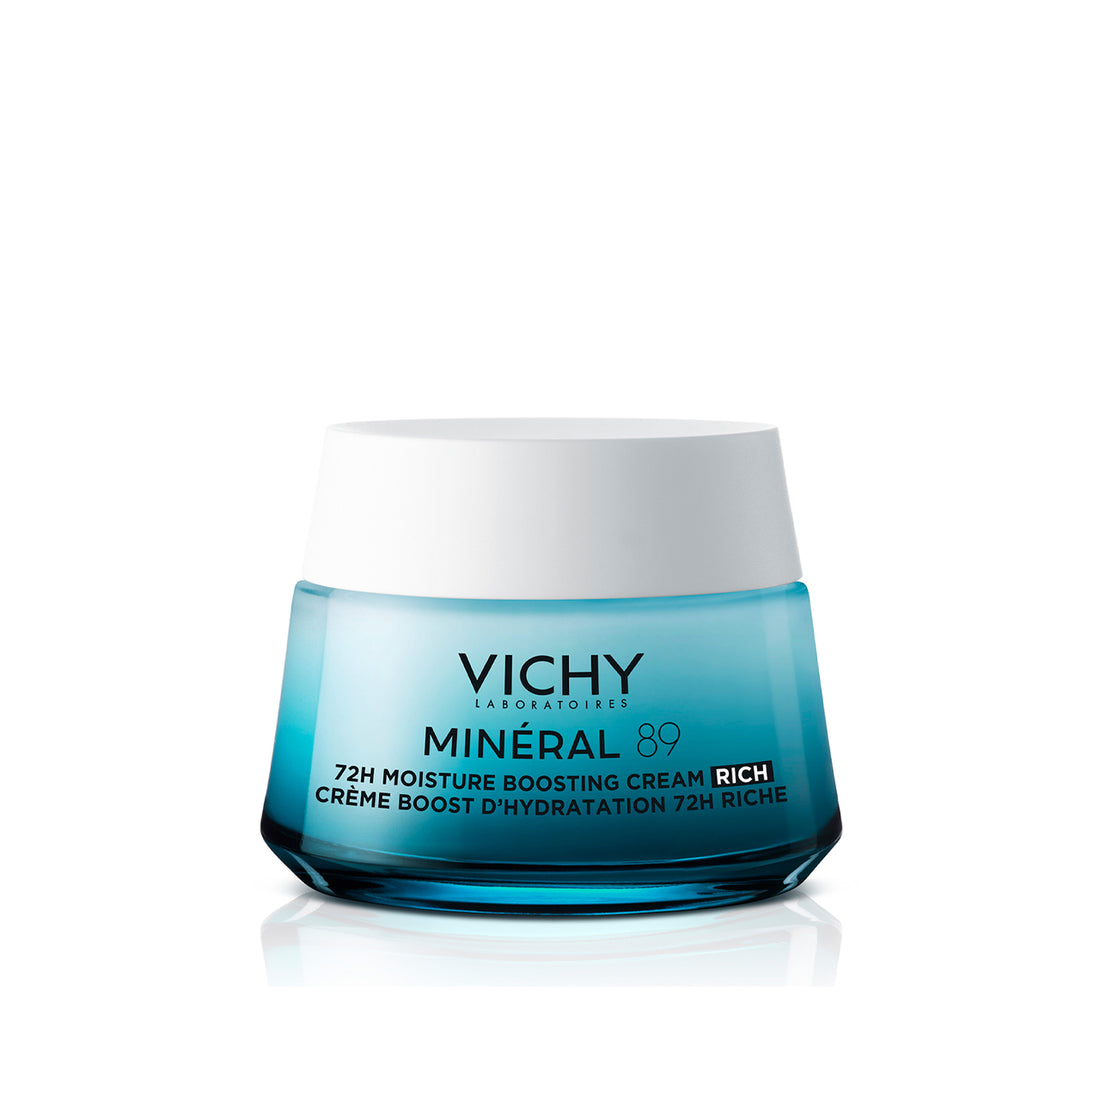 Vichy Mineral 89 Moisturizing Boosting Cream 72H Rich Hydration 50 Ml